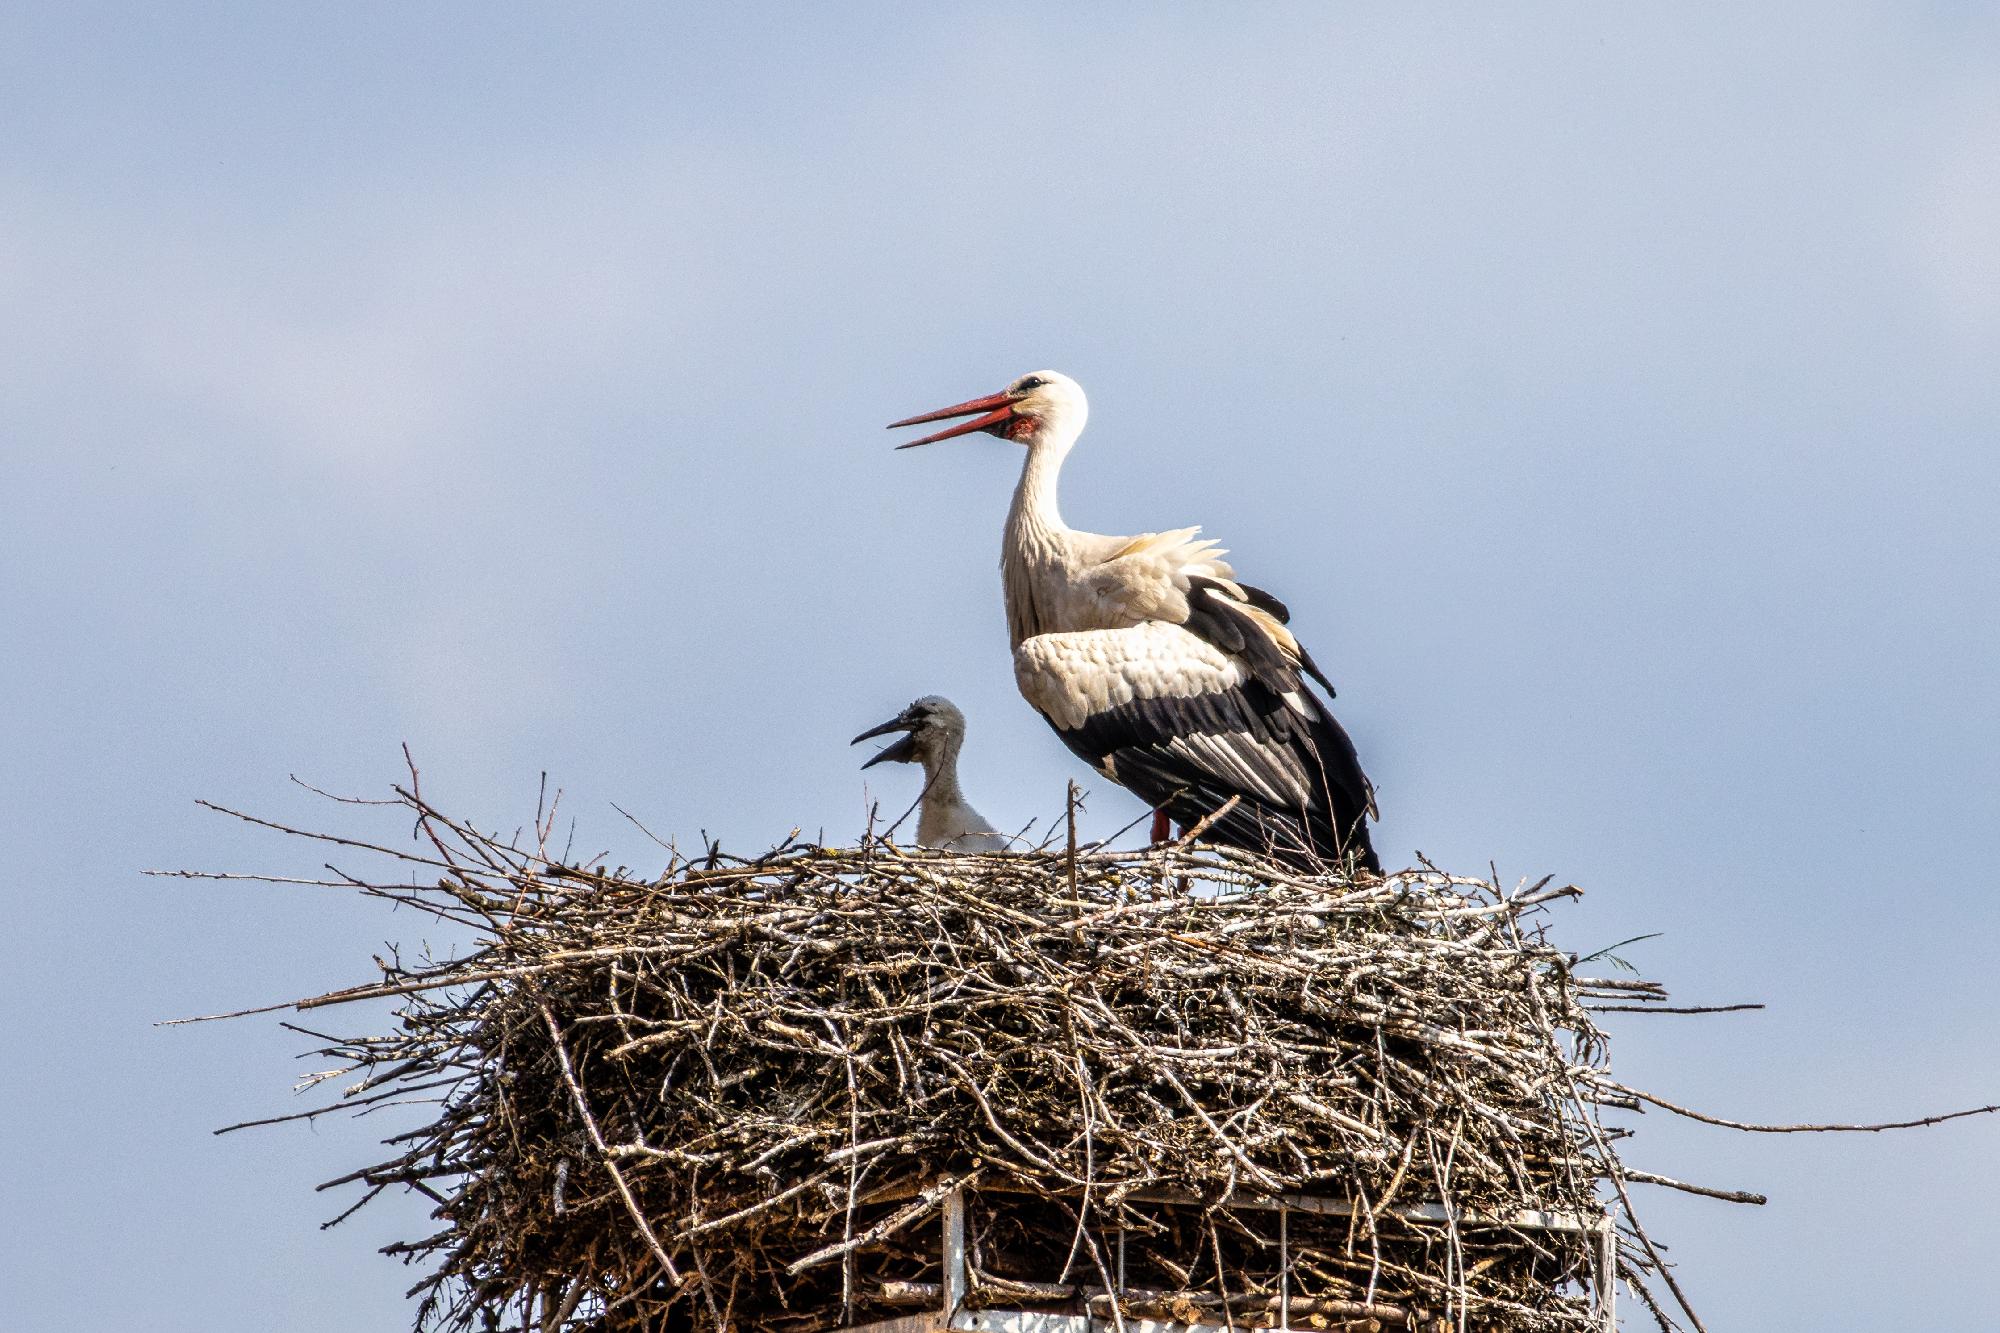 Így segíthet a madártani egyesületnek a fehér gólyák országos felmérésében